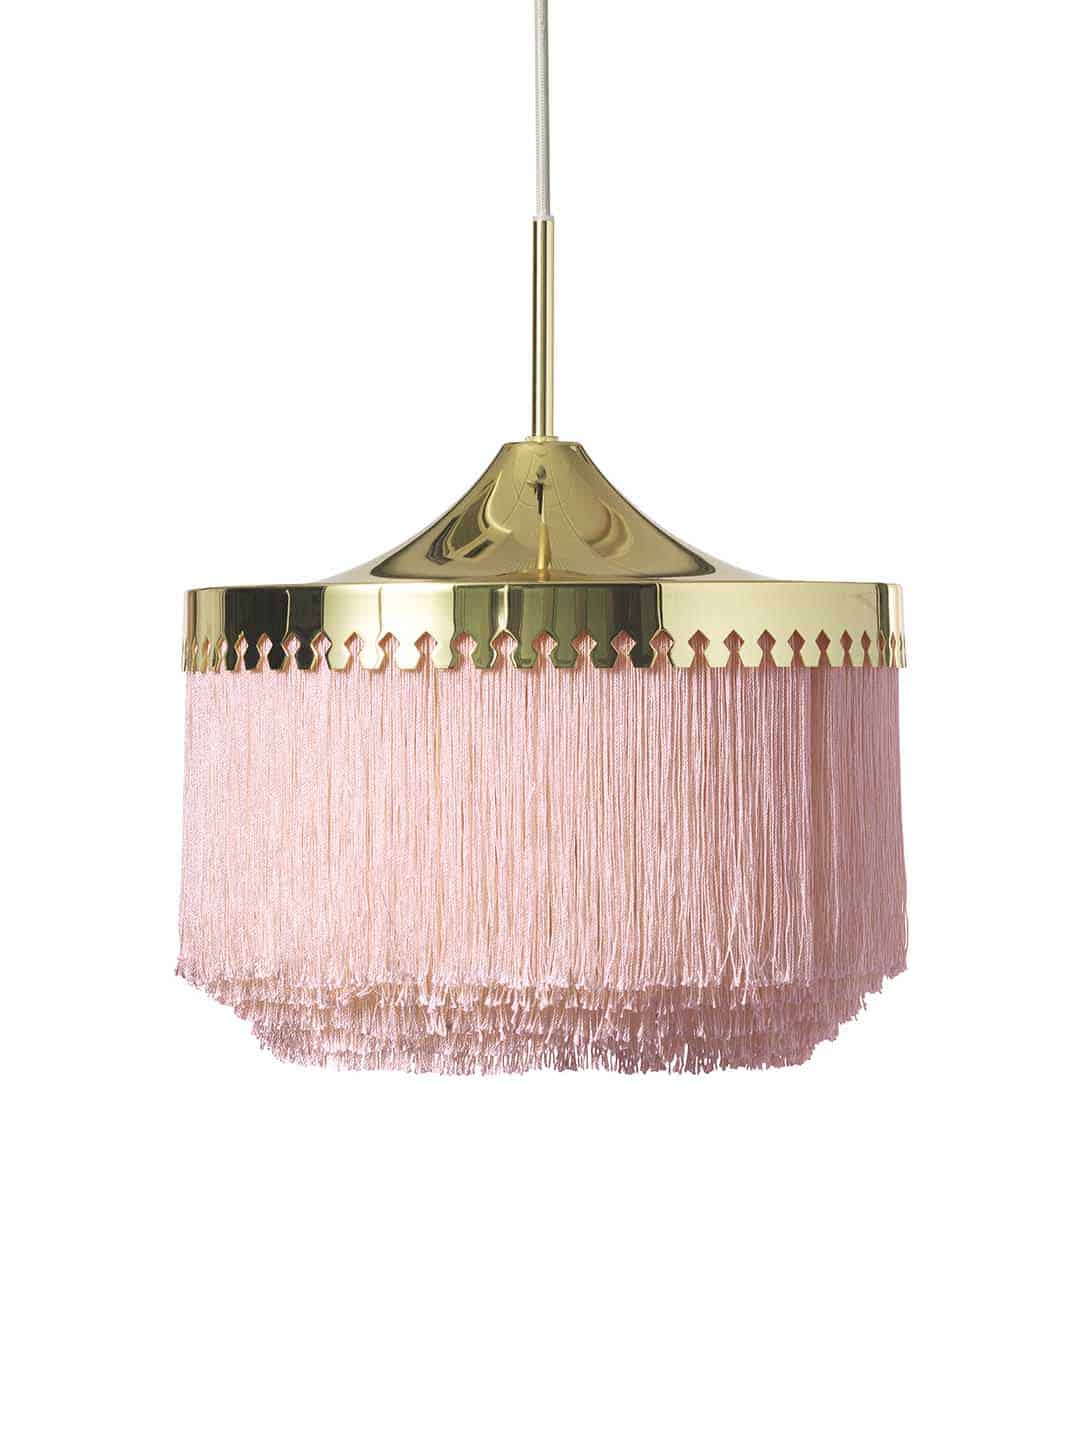 Светильник подвесной Warm Nordic Fringe диаметром 30 см в бледно-розовом цвете